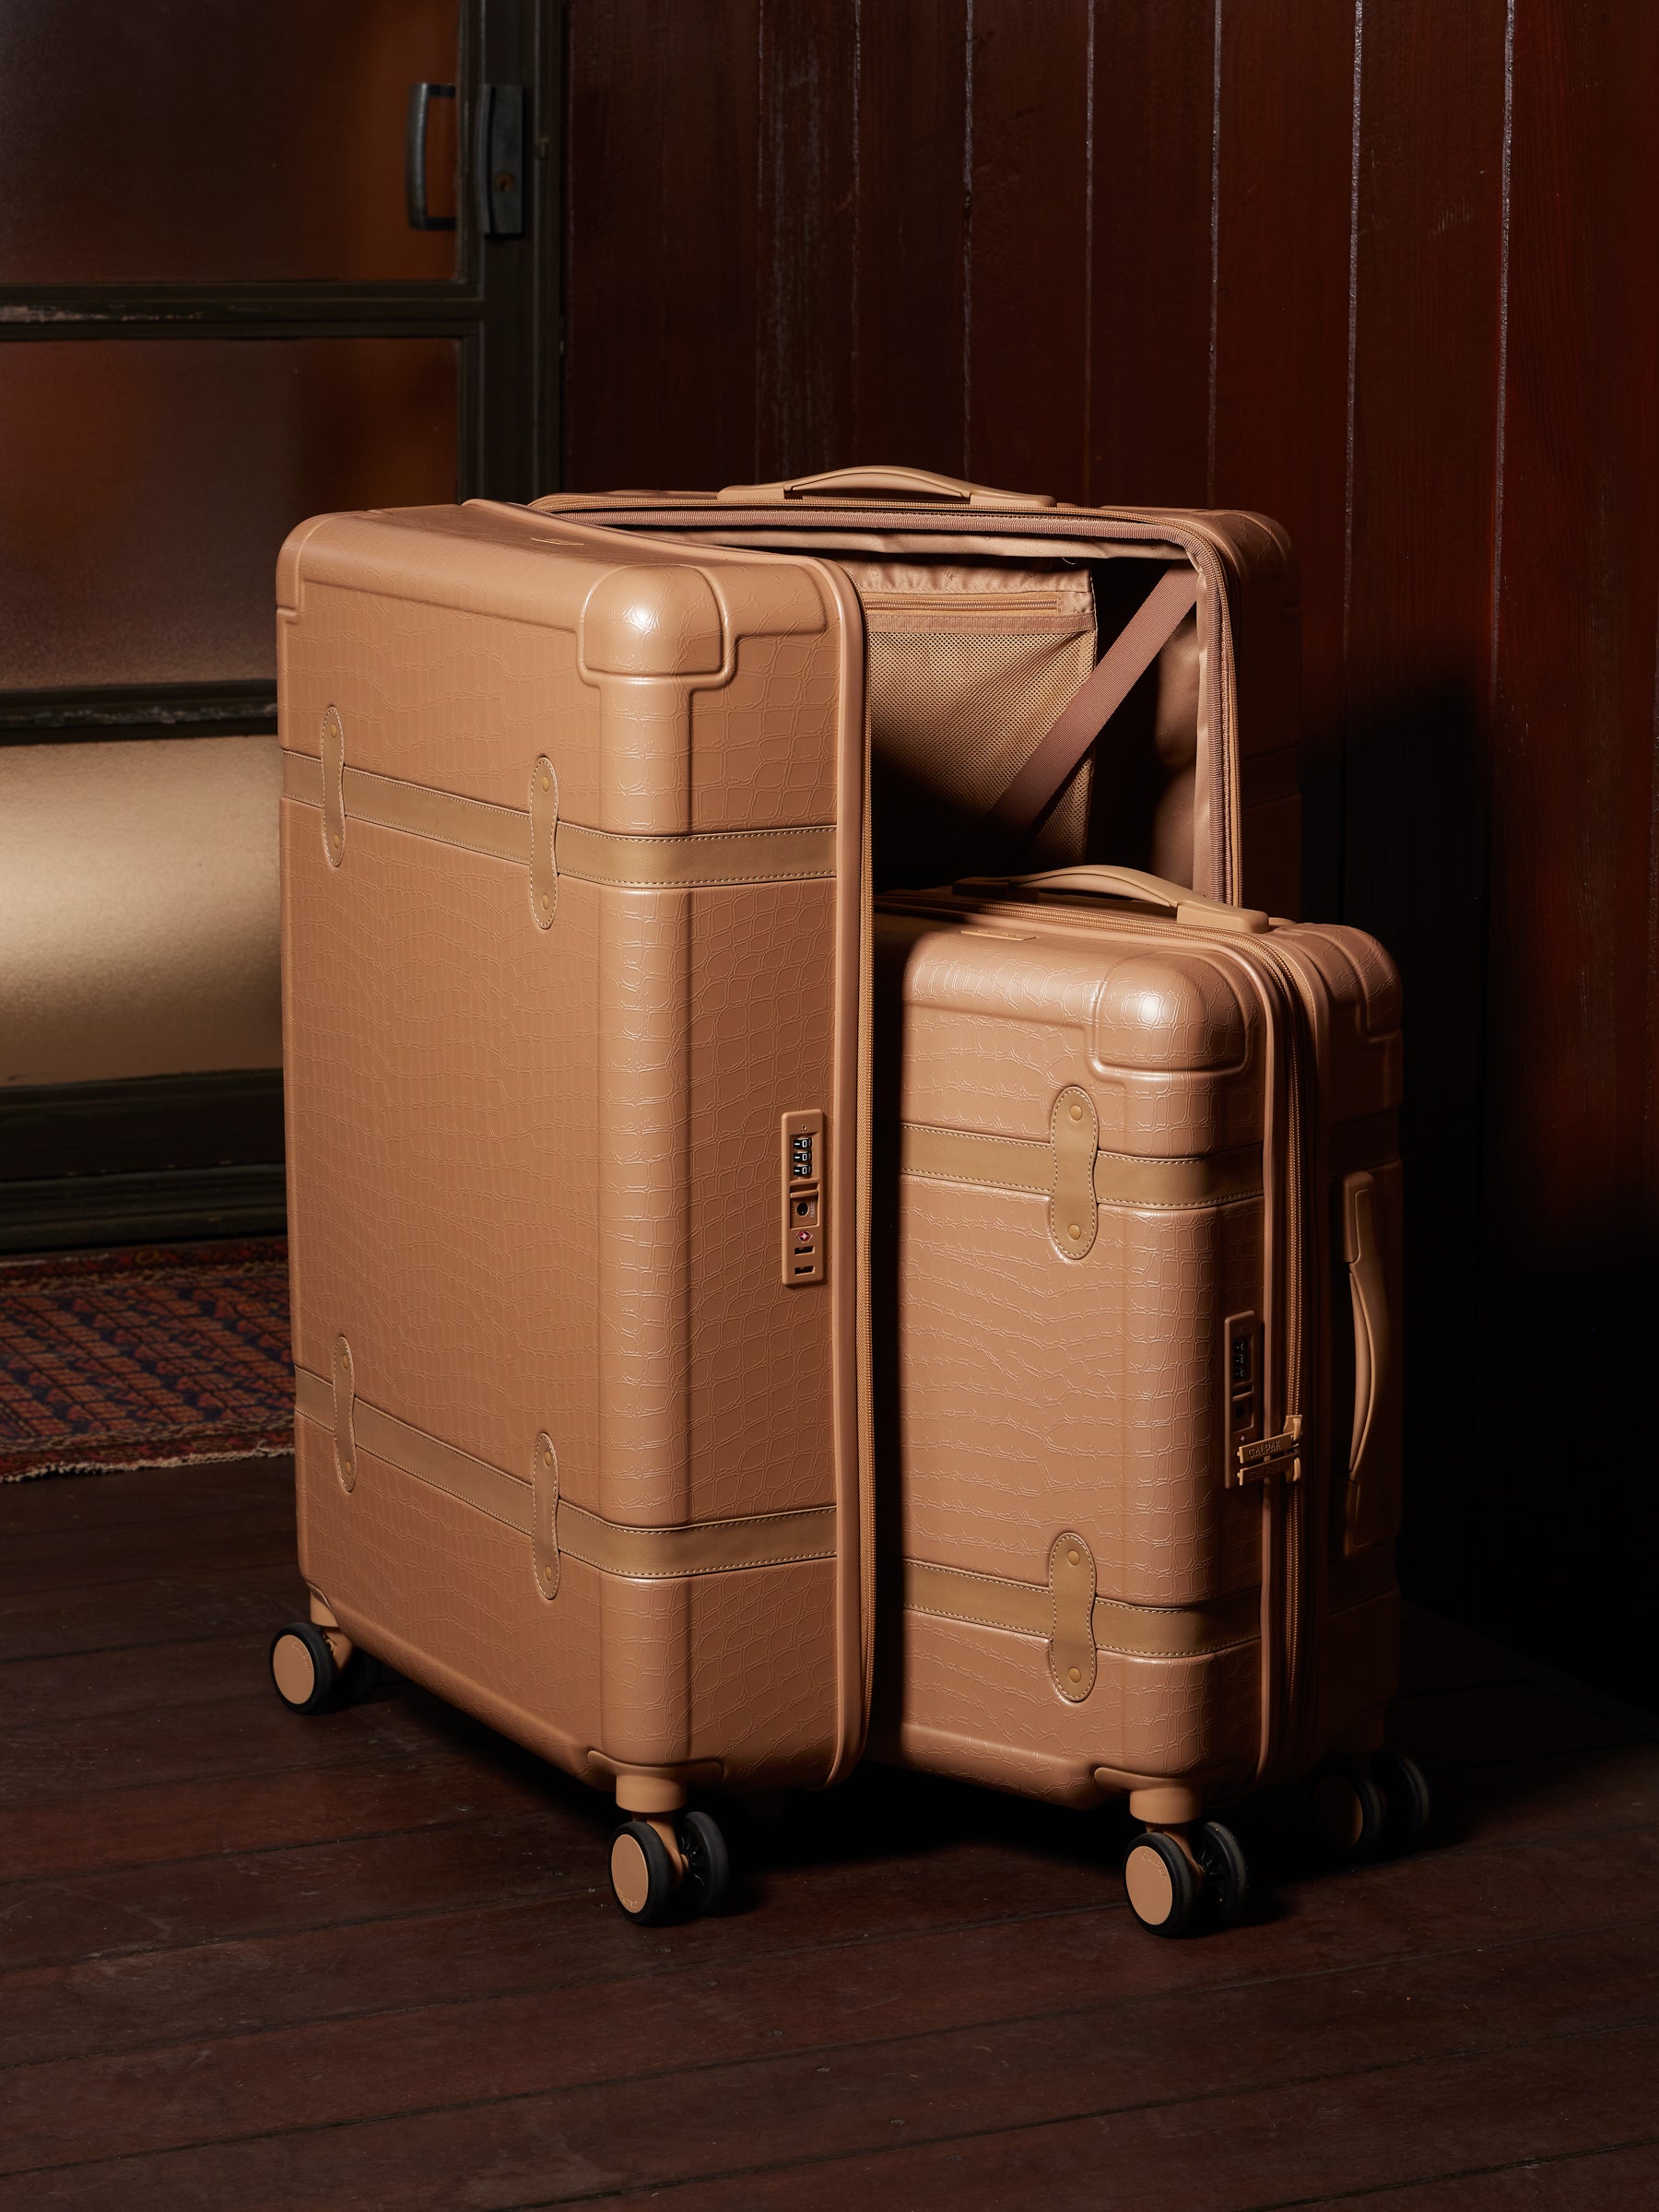 CALPAK TRNK hardside spinner luggages in beige almond color